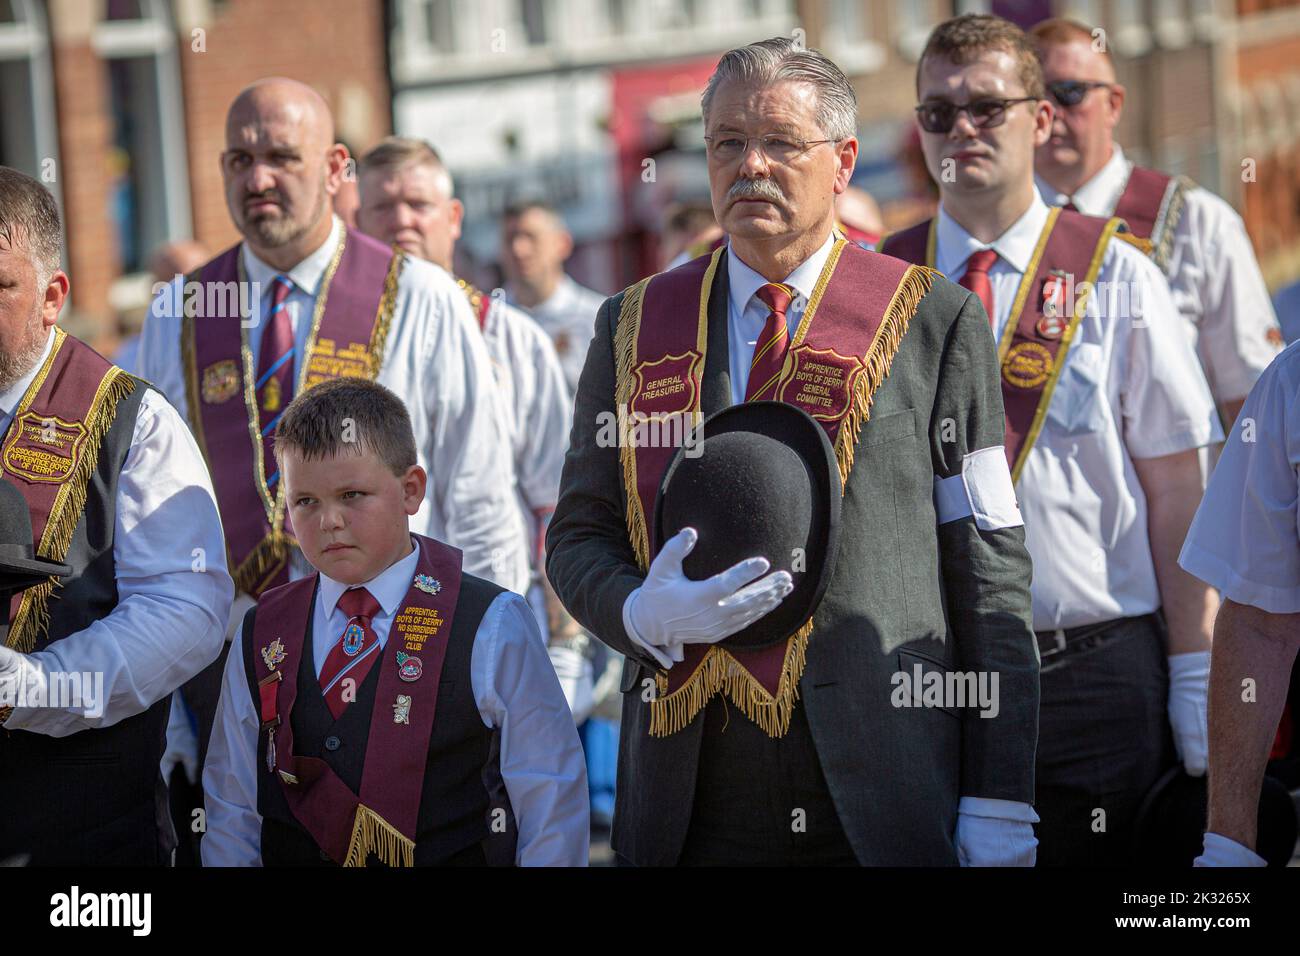 13 agosto 2022, Londonderry: David Hoey dei ragazzi apprendisti di Derry ha partecipato alla parata annuale di Relief of Derry, la più grande parata di Ordine fedele. Foto Stock